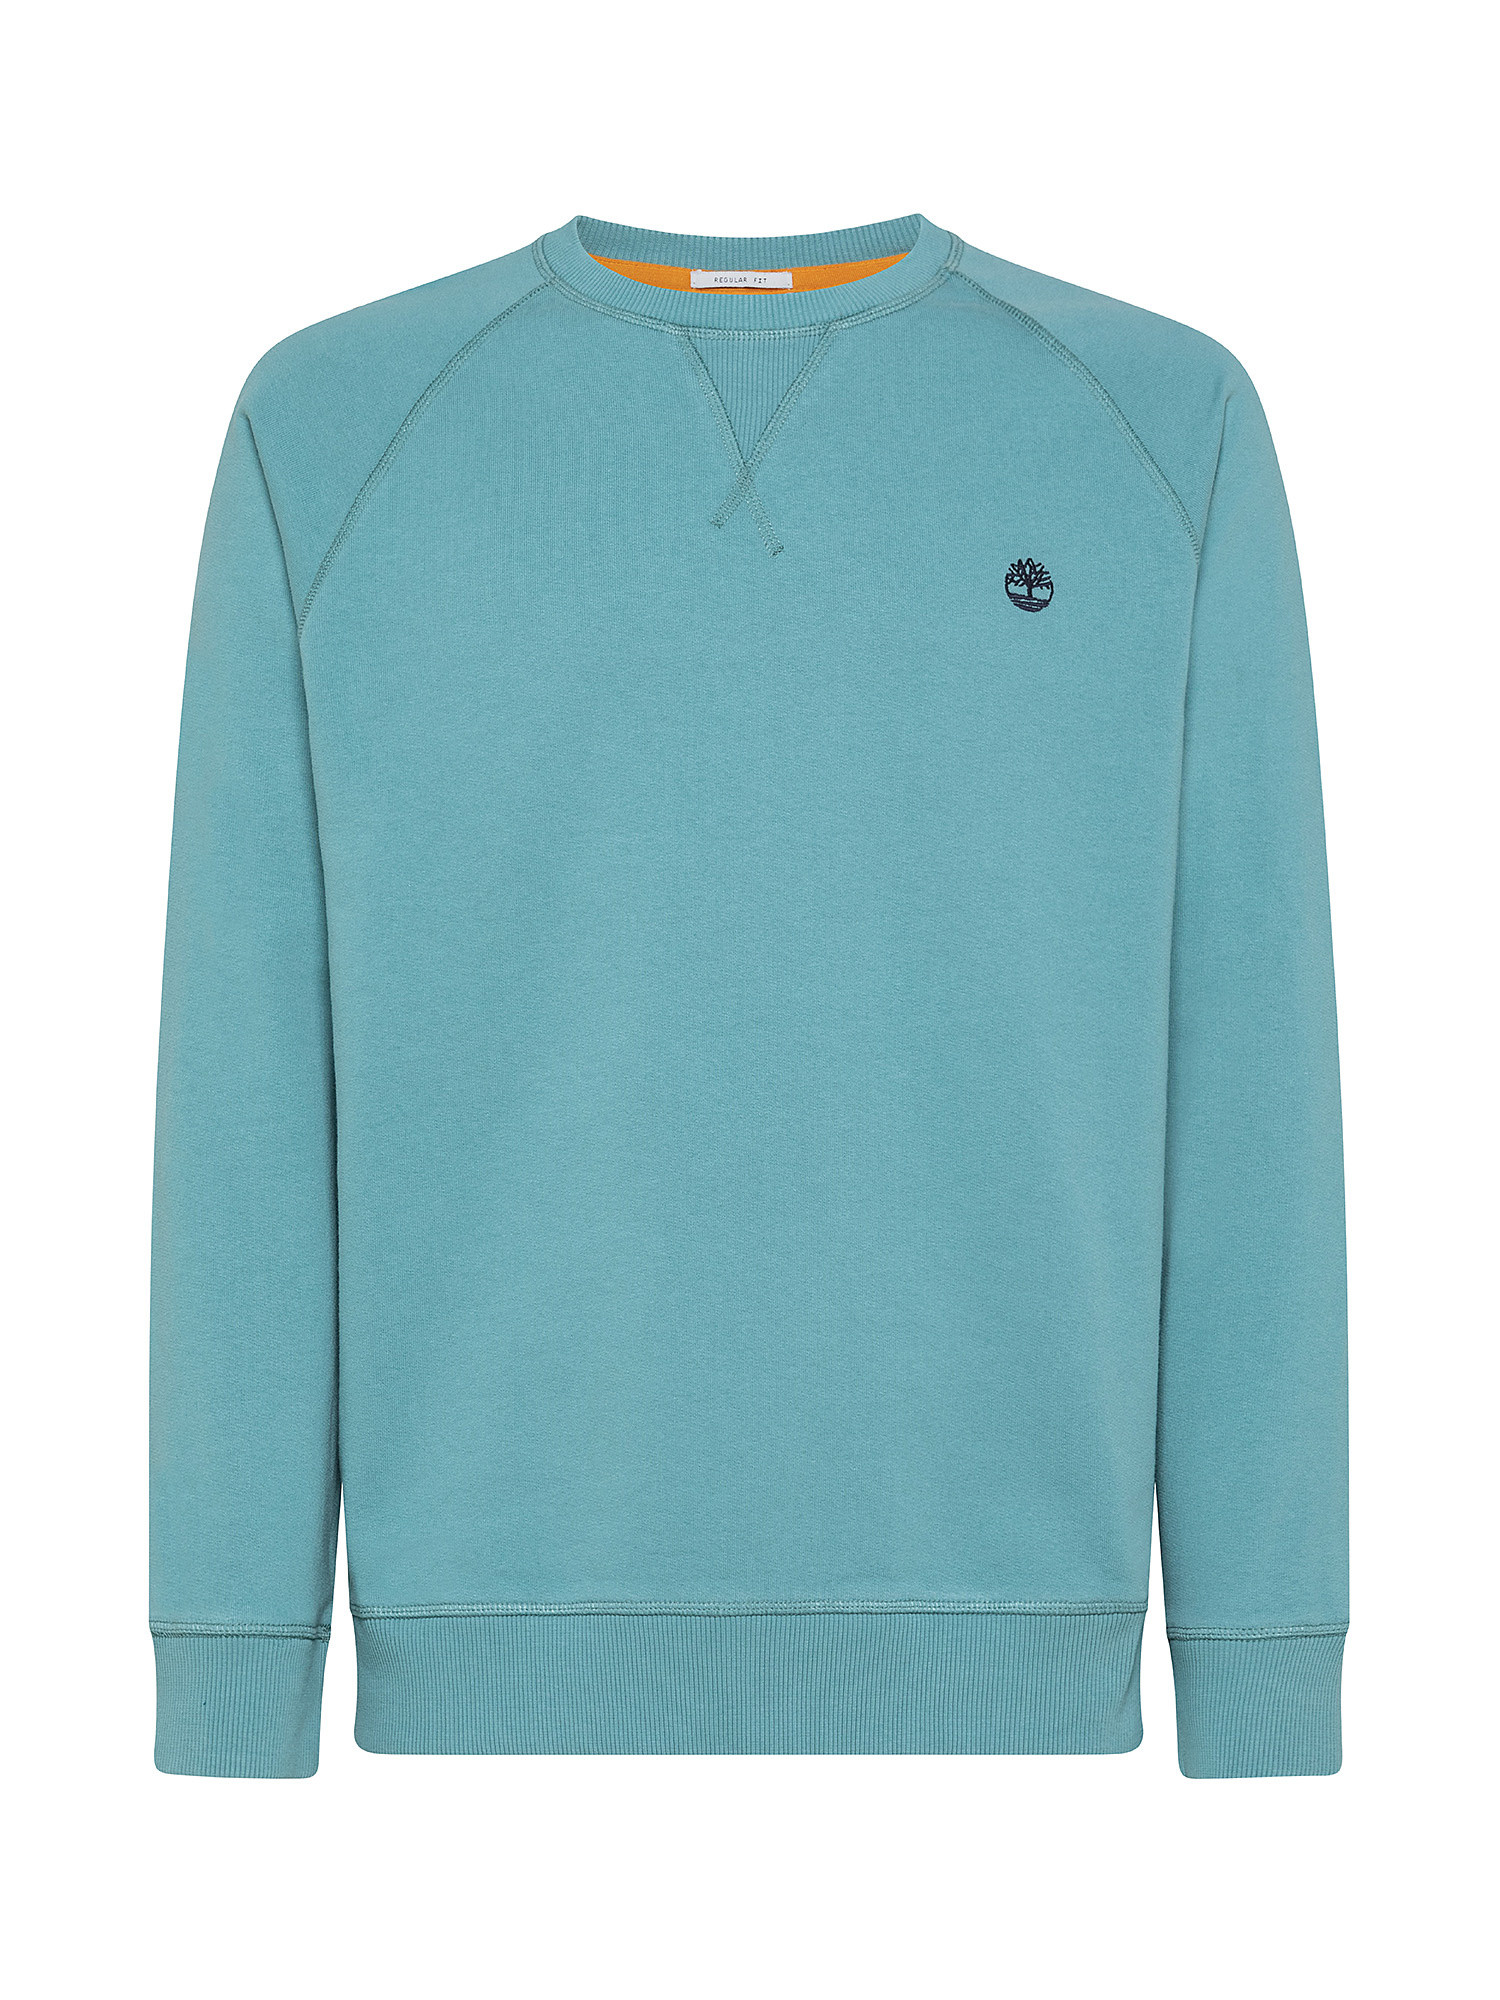 Men's Exeter River Sweatshirt, Light Blue, large image number 0